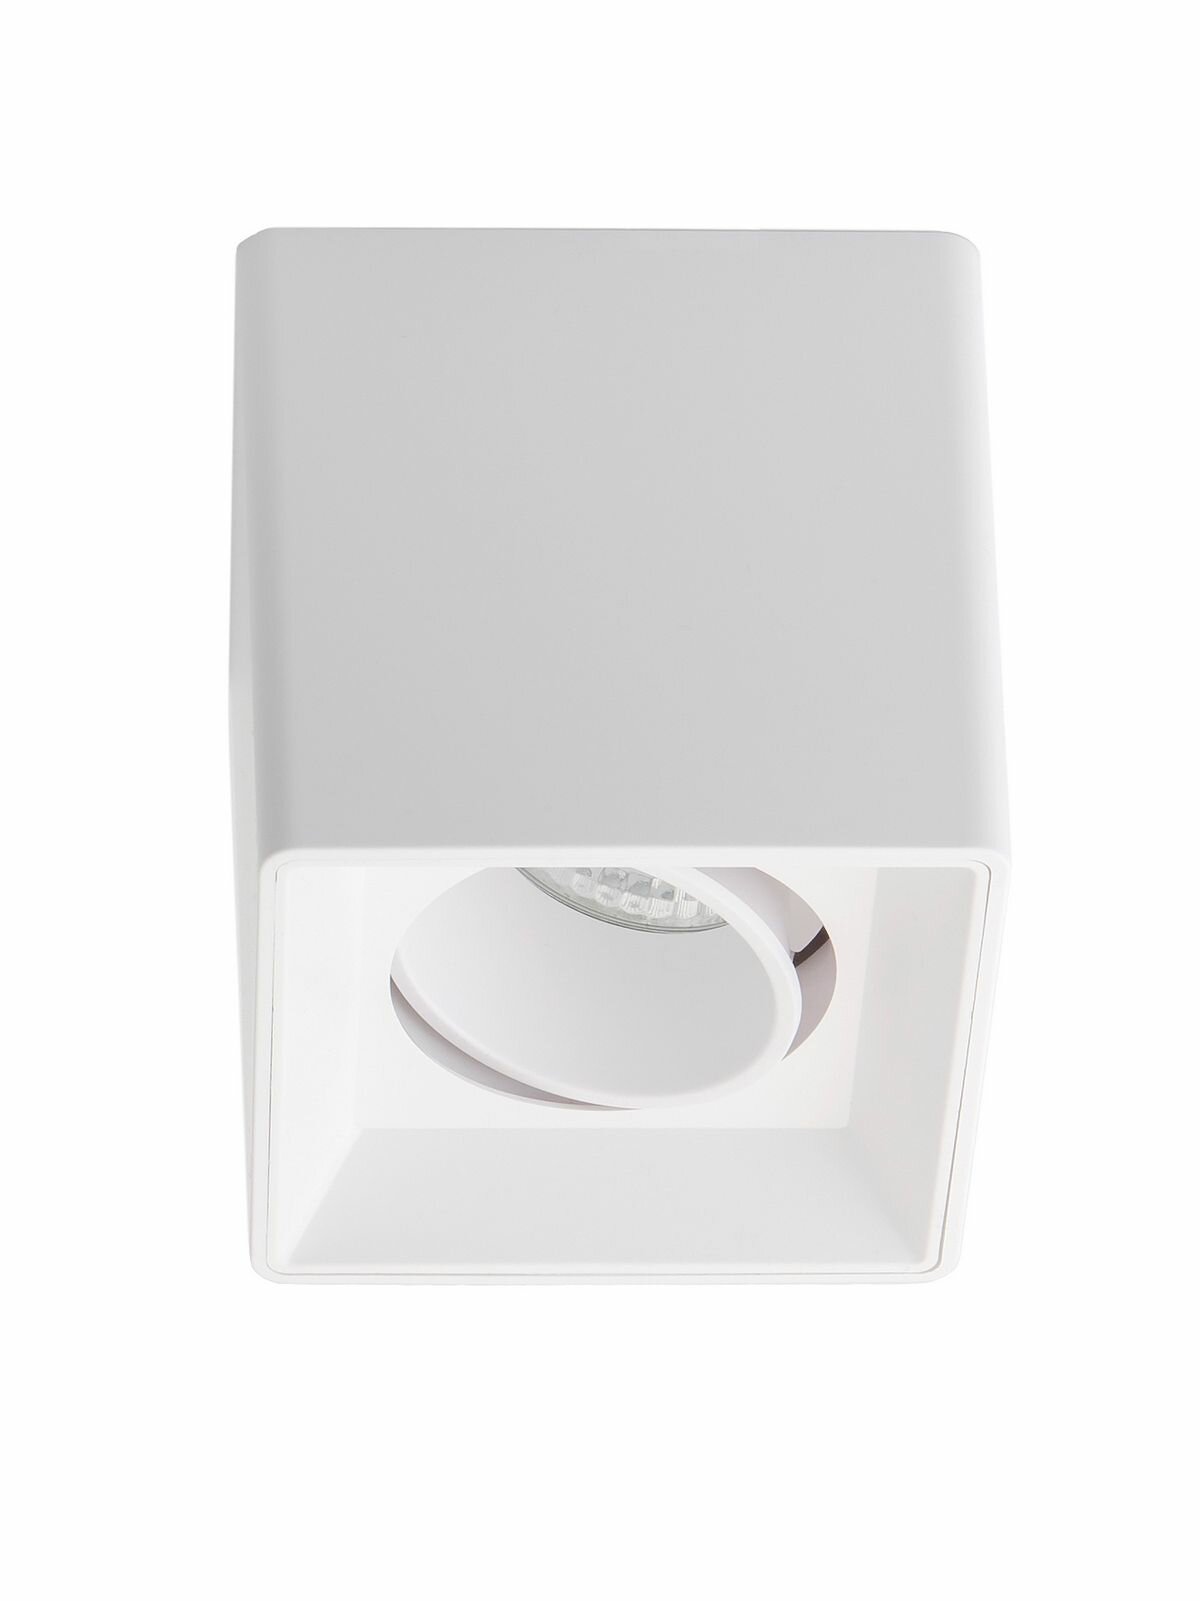 Спот потолочный накладной для натяжных или обычных потолков Maple Lamp PL100-WHITE, белый, GU10